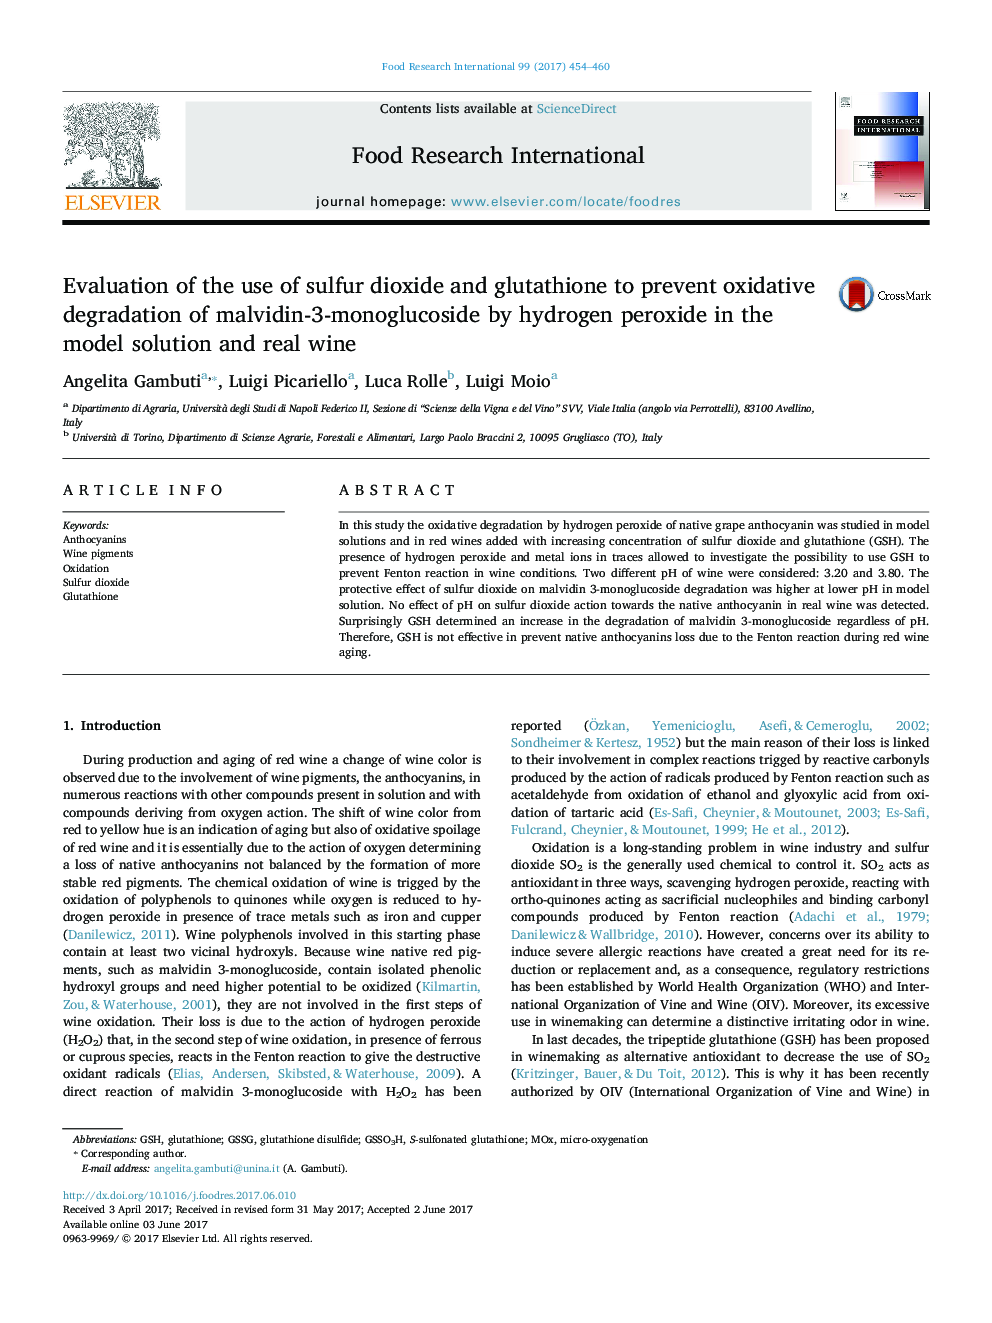 ارزیابی استفاده از دی اکسید گوگرد و گلوتاتیون برای جلوگیری از تجزیه اکسیداتیو مالیدین-3-مونوگلوکوزید توسط پراکسید هیدروژن در محلول مدل و شراب واقعی 